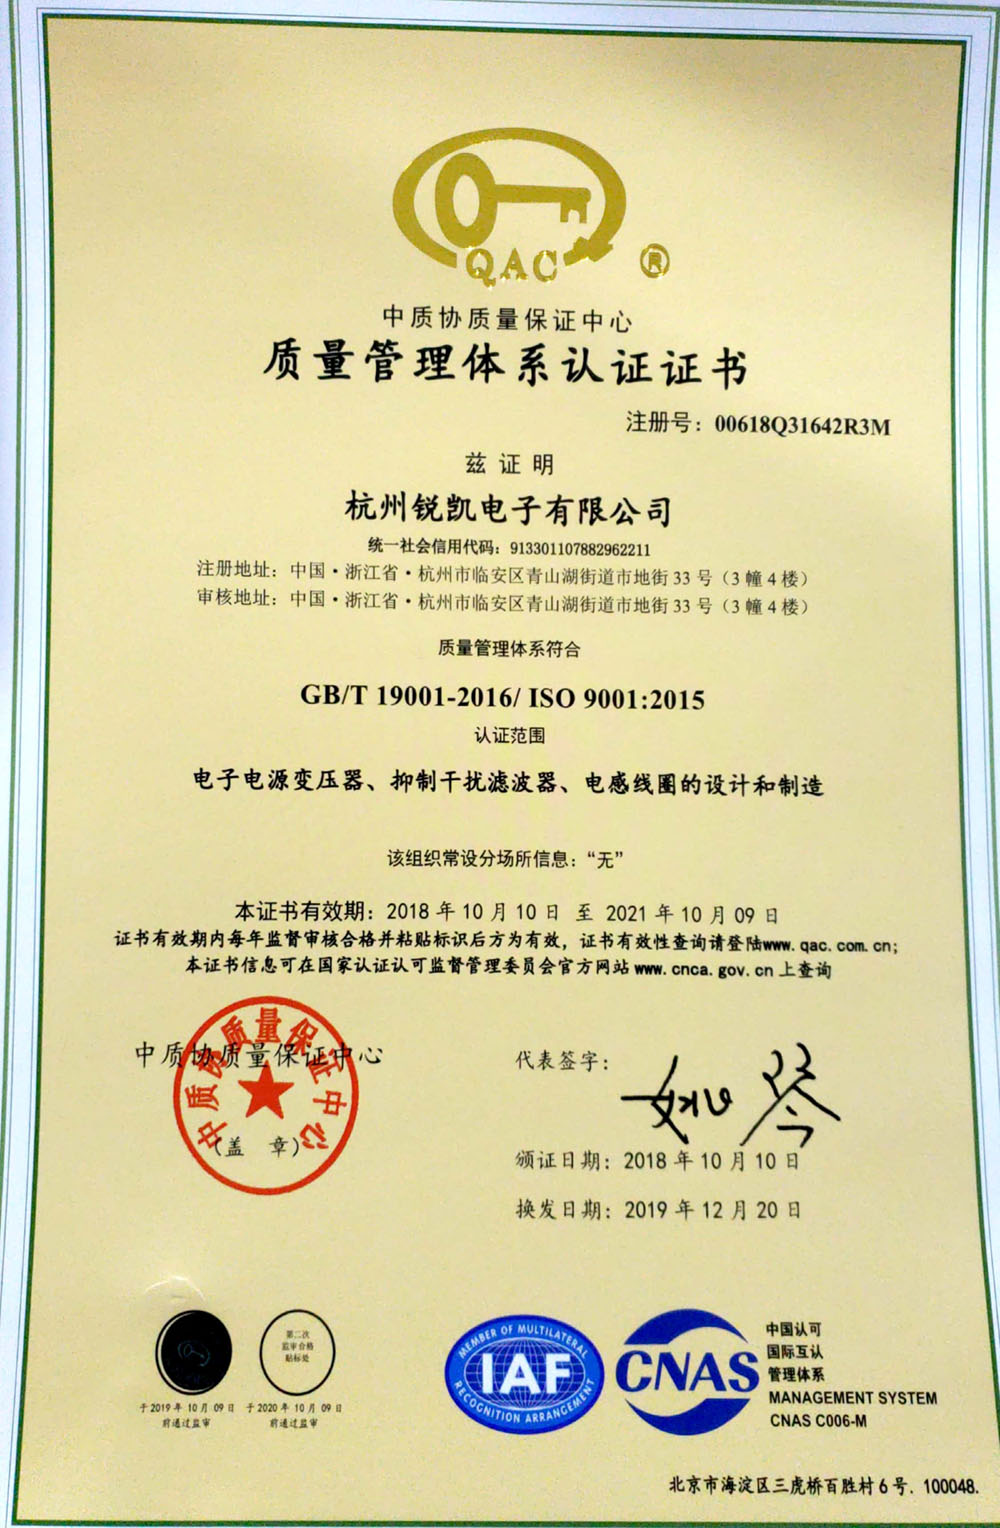 IOS9001 certificate